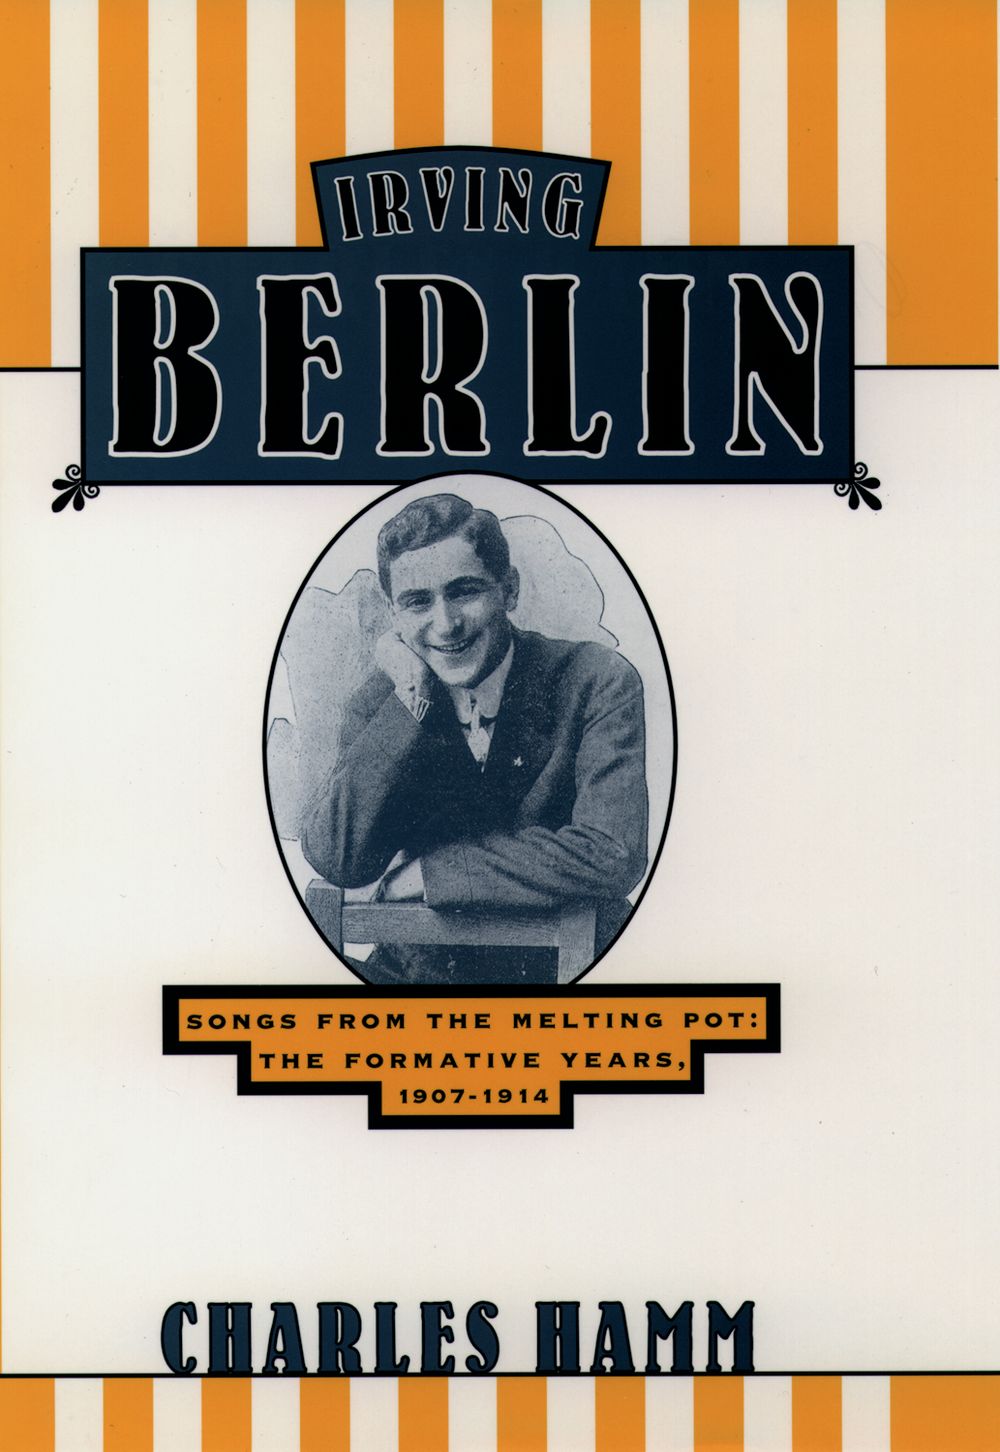 Hamm Irving Berlin Hardback Sheet Music Songbook